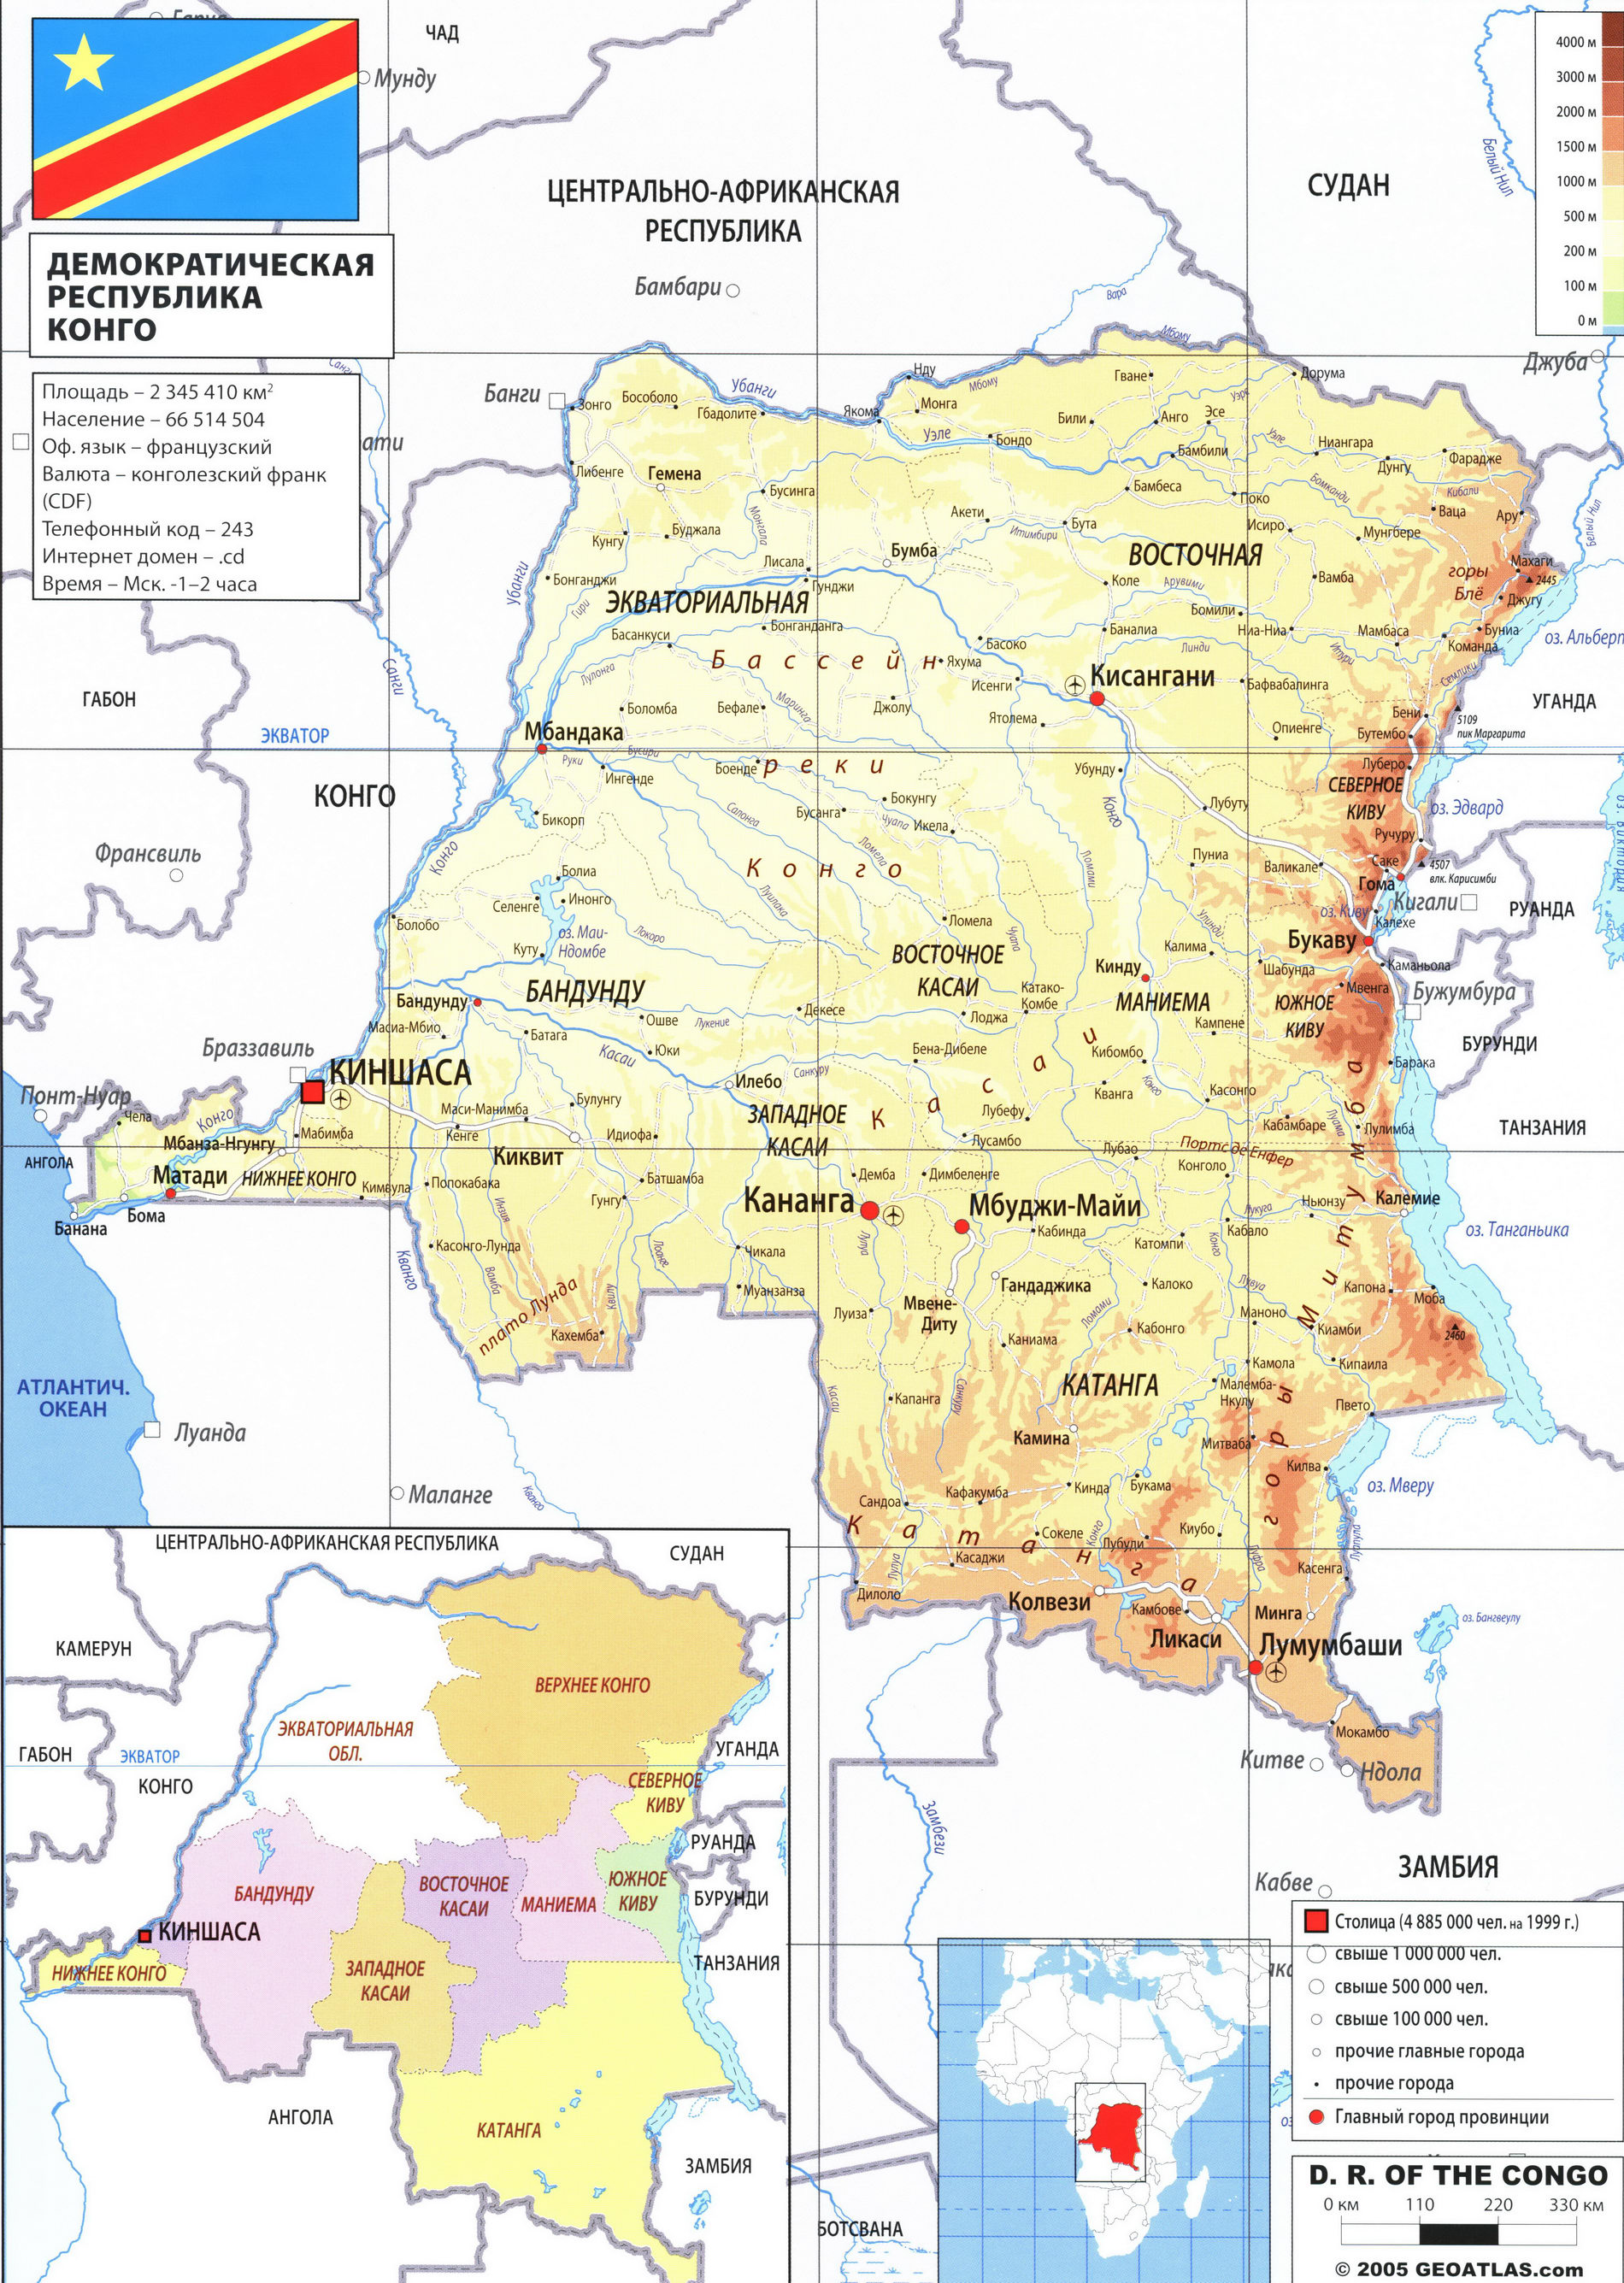 Демократическая республика Конго - Заир